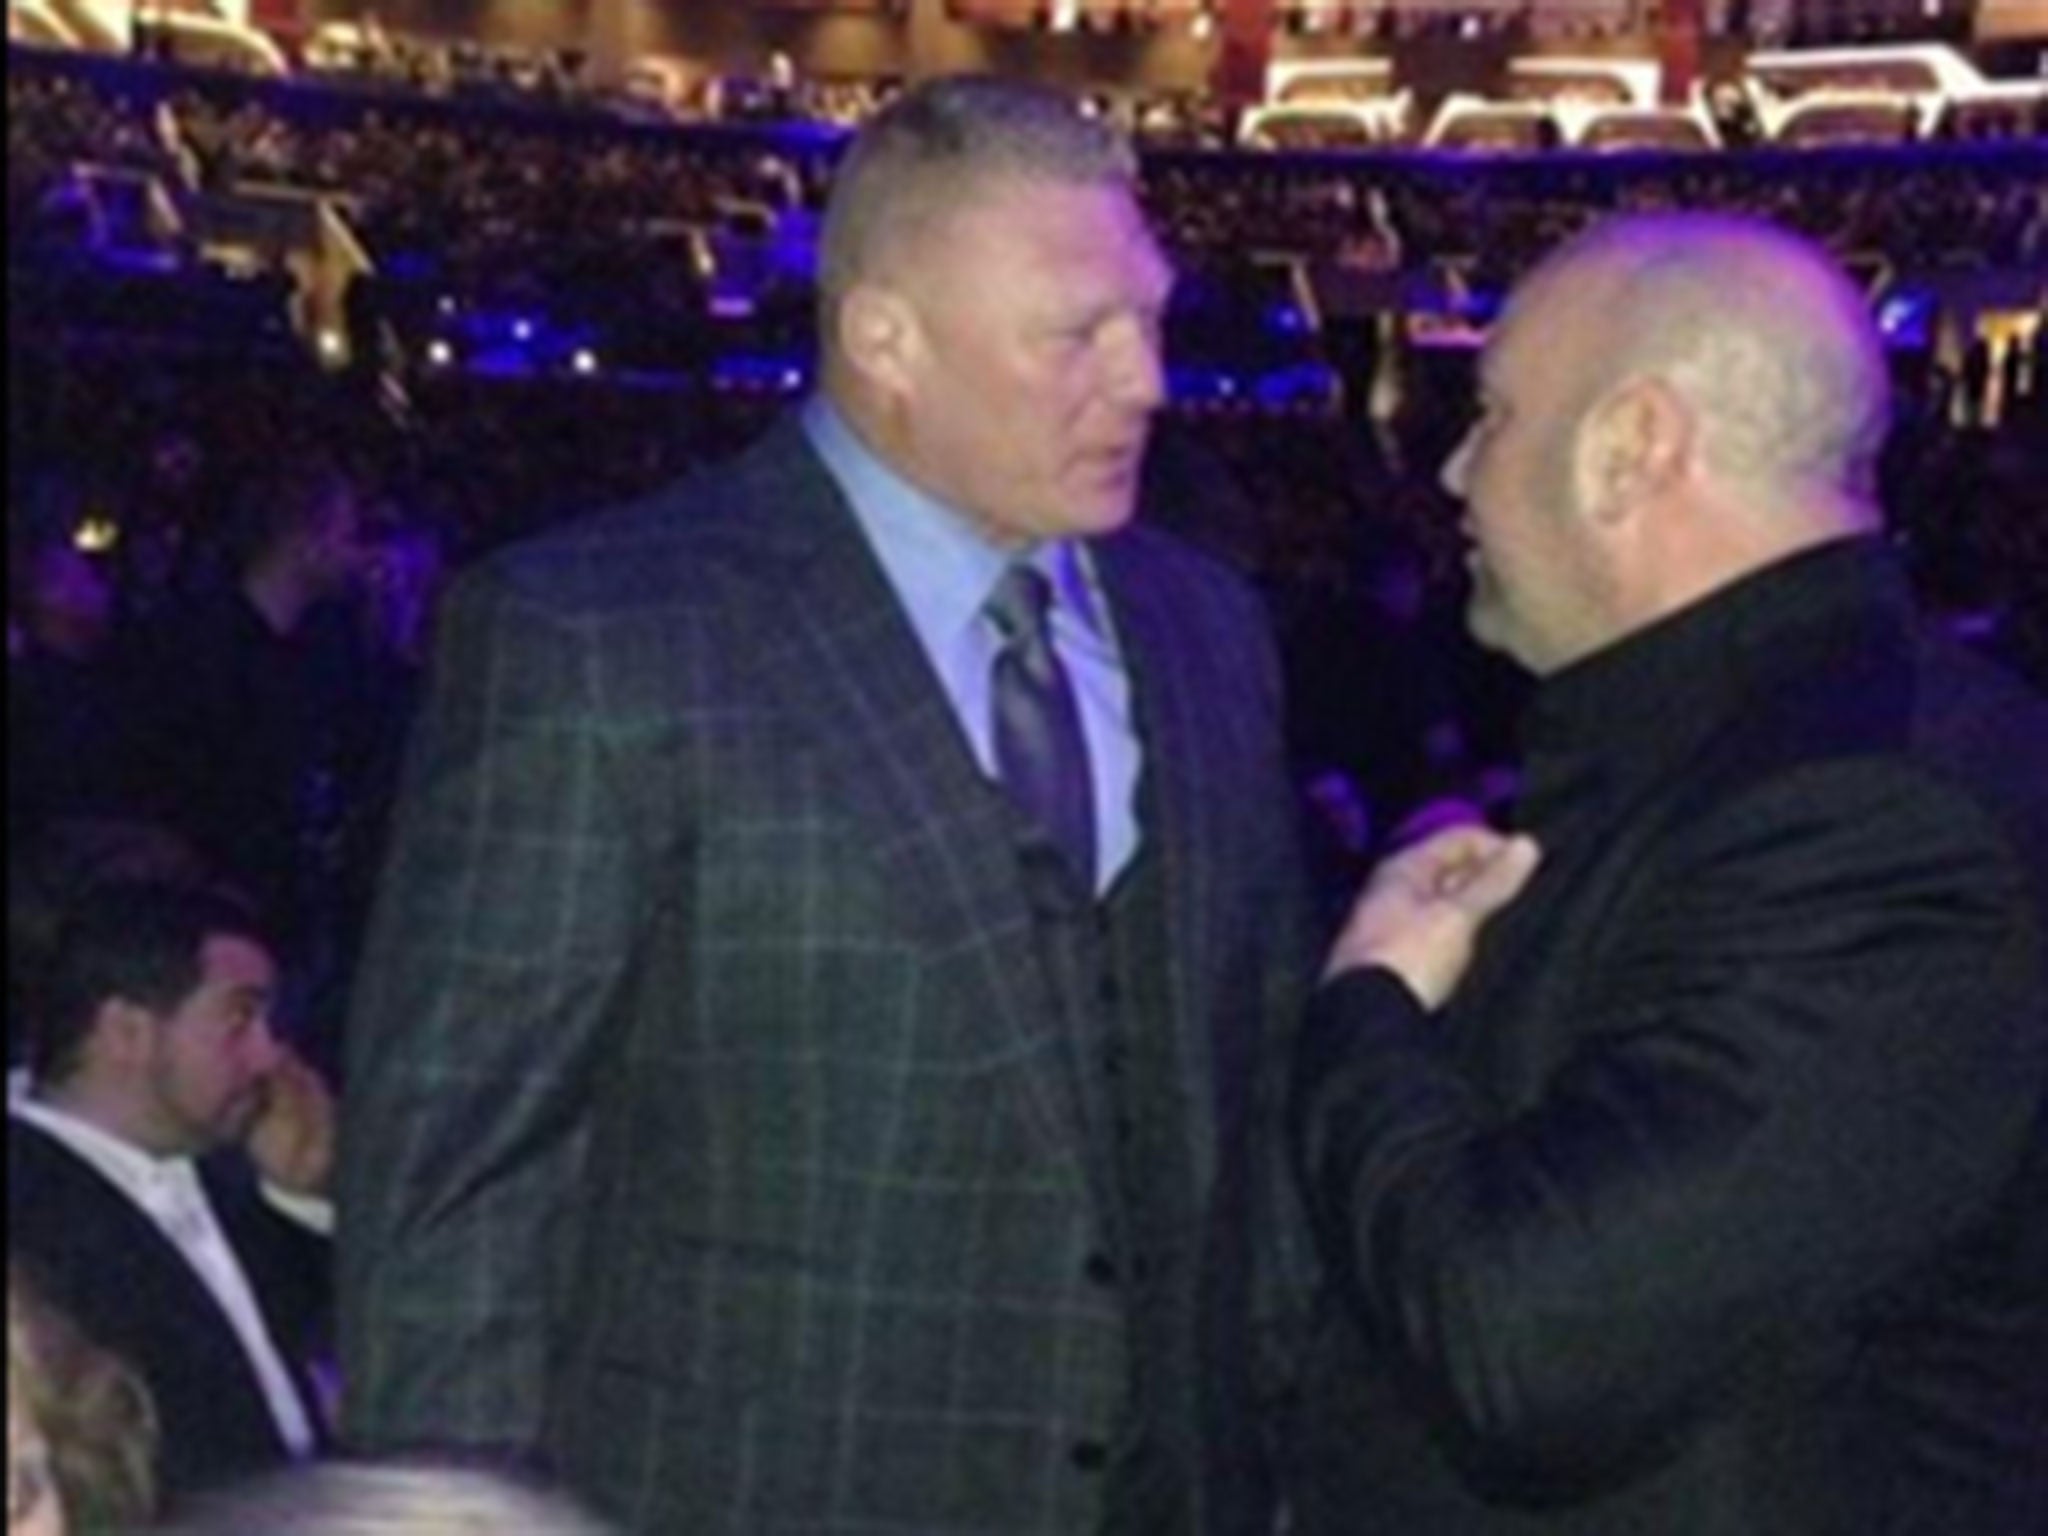 Brock Lesnar and Dana White met again at UFC 184